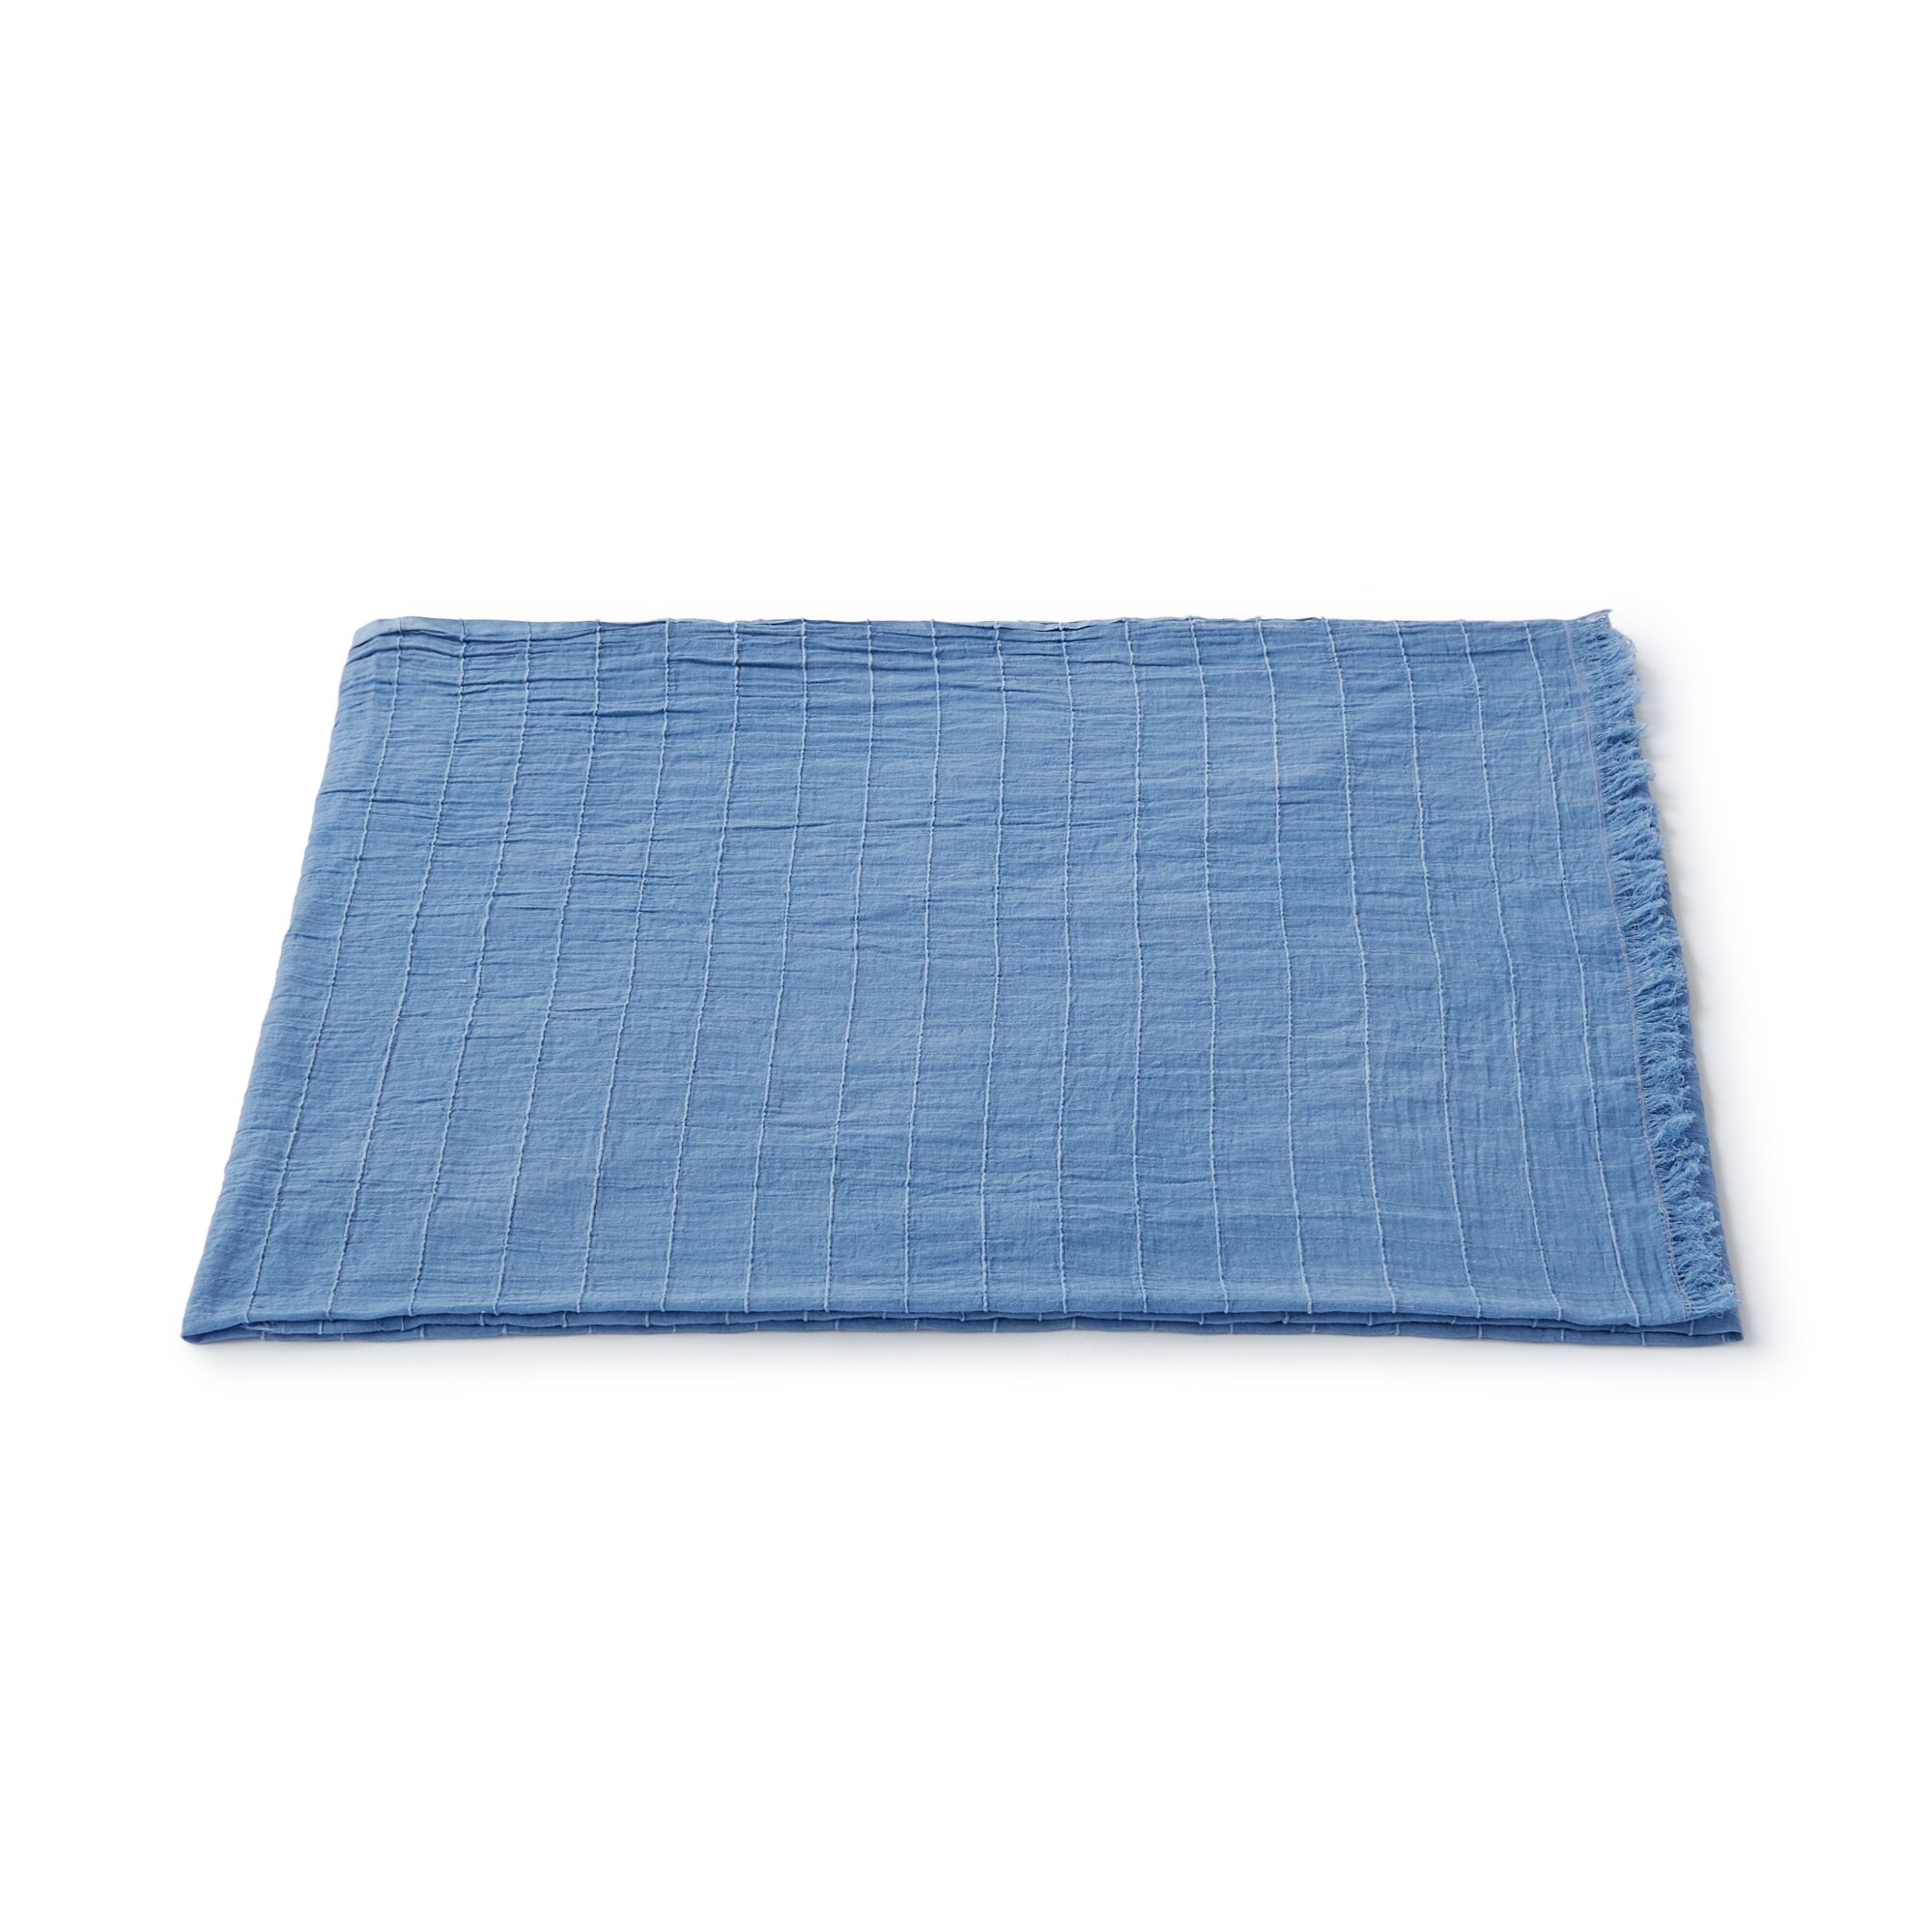 무인양품 일본 거실 담요 블랭킷 숄 180x100 블루 체크